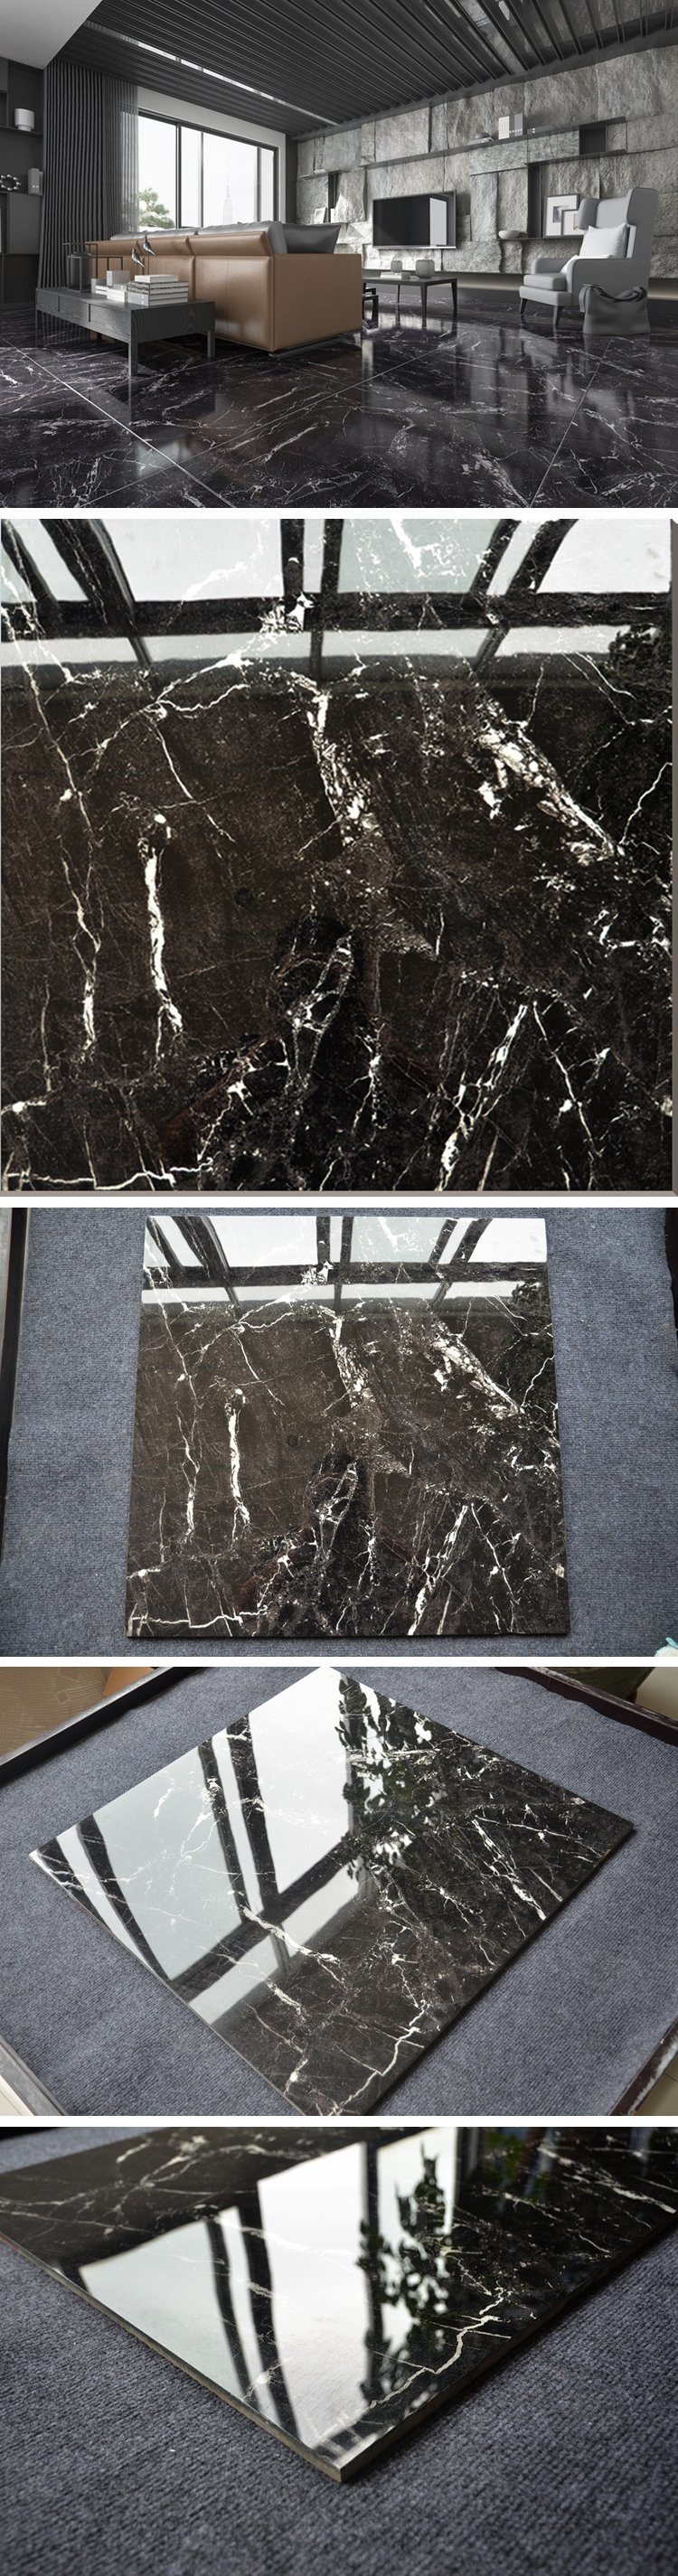 60X60 Glazed Surface Black Tile Flooring Modern Living Room